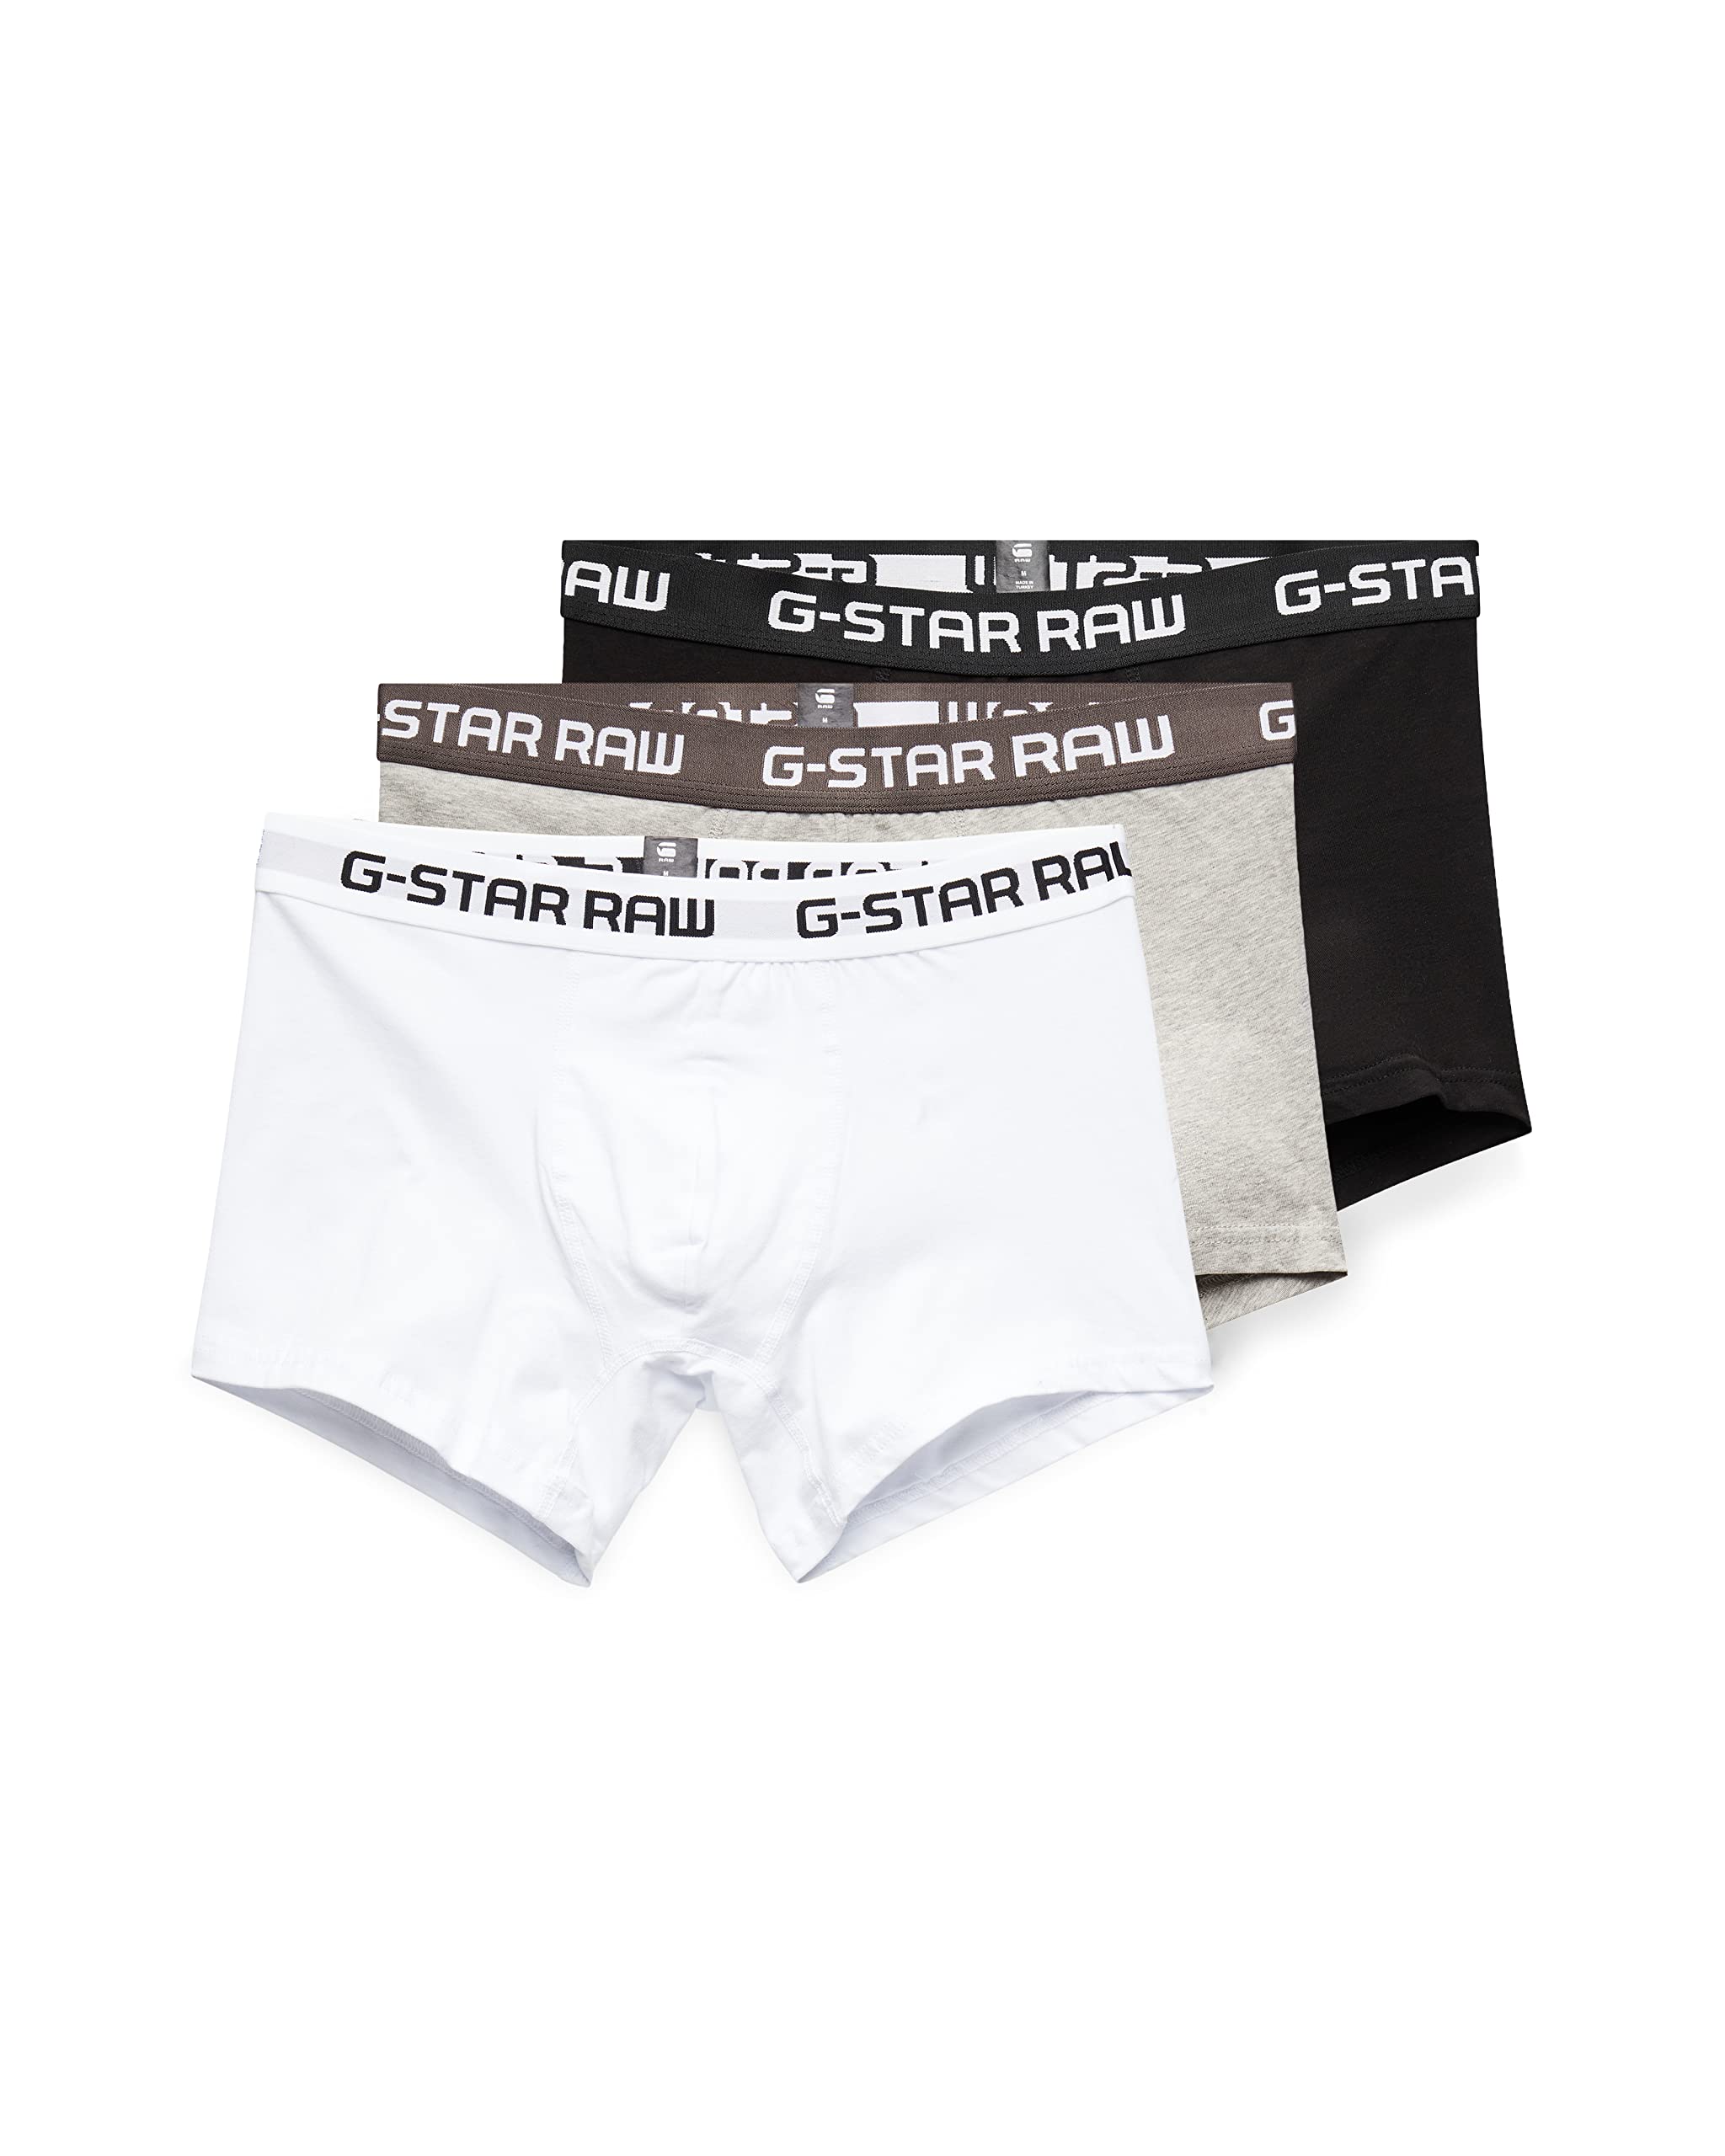 G-STAR RAW Herren Classic Trunks 3-Pack, Mehrfarben (black/grey htr/white D03359-2058-6172), L